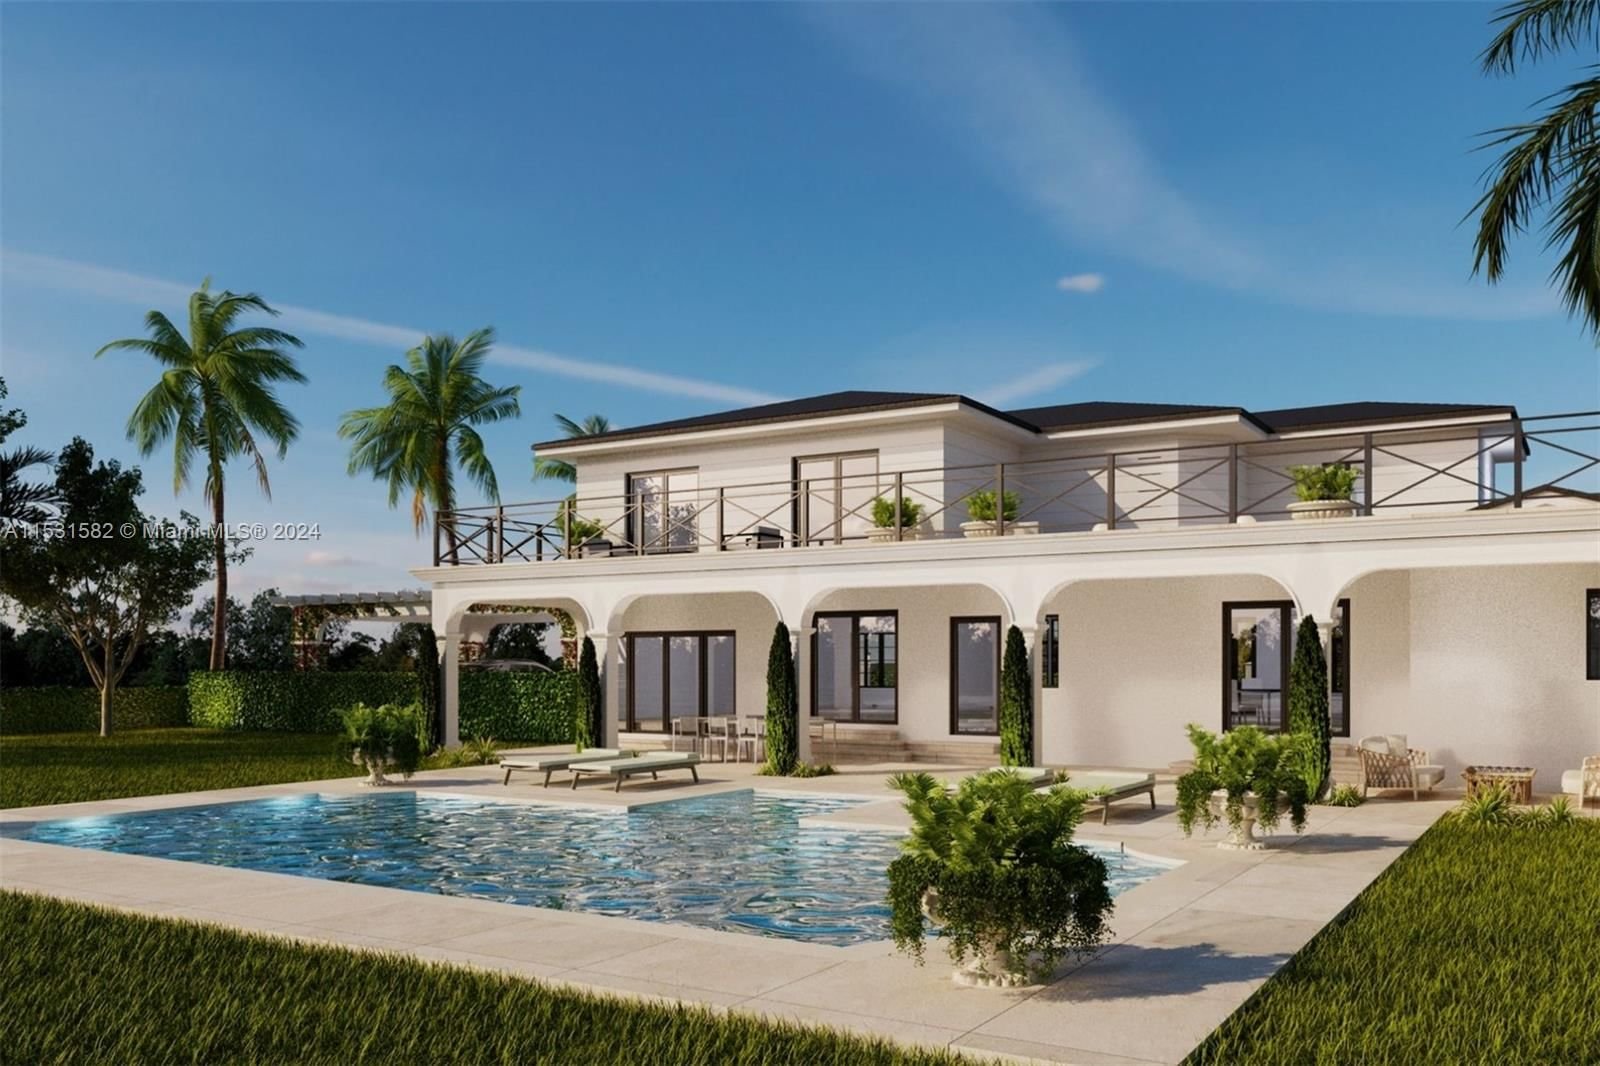 Real estate property located at 6080 Alton Rd, Miami-Dade County, LA GORCE GOLF SUB, Miami Beach, FL